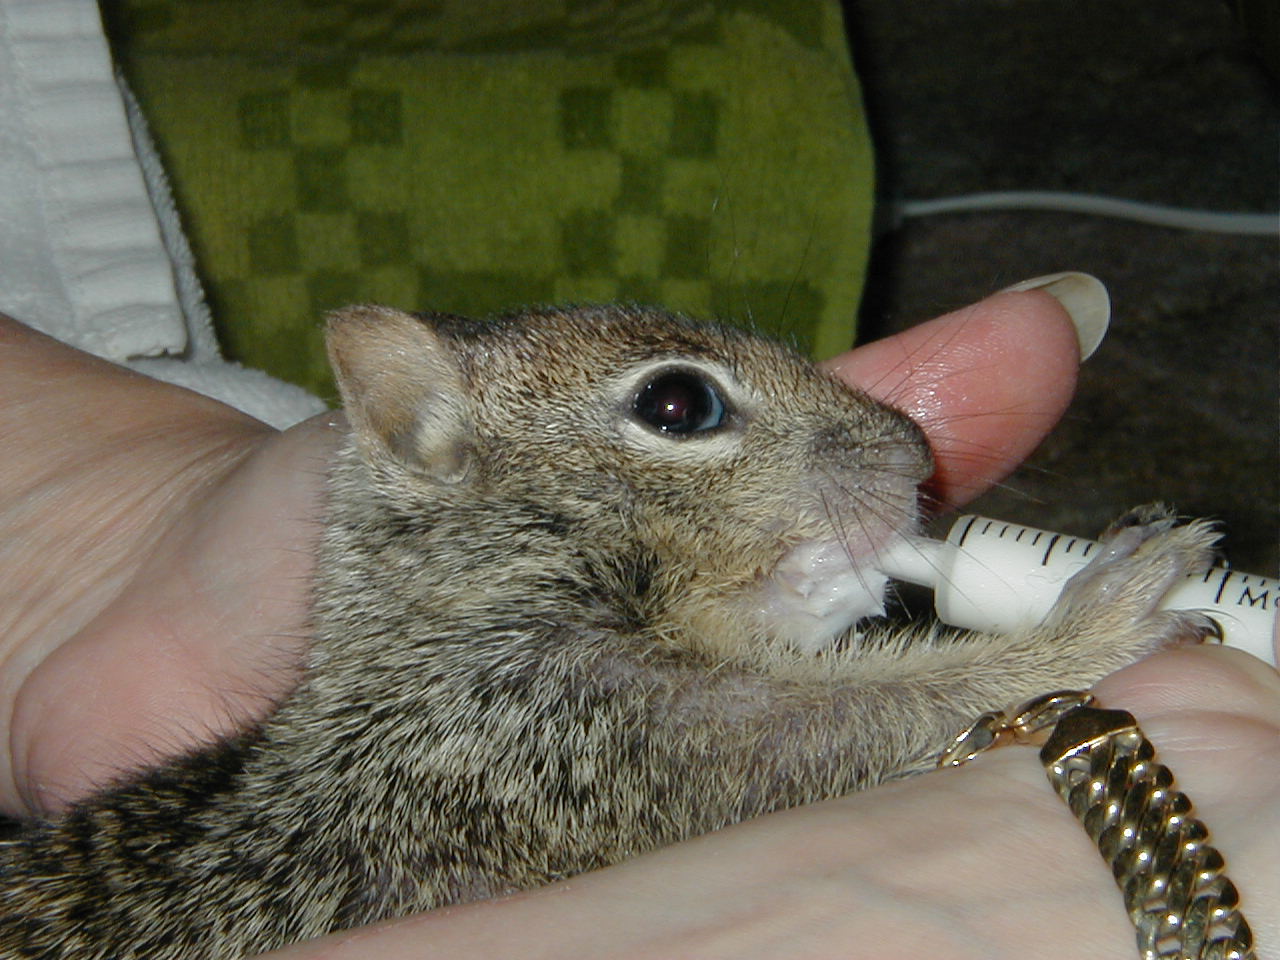 Baby ground squirrel